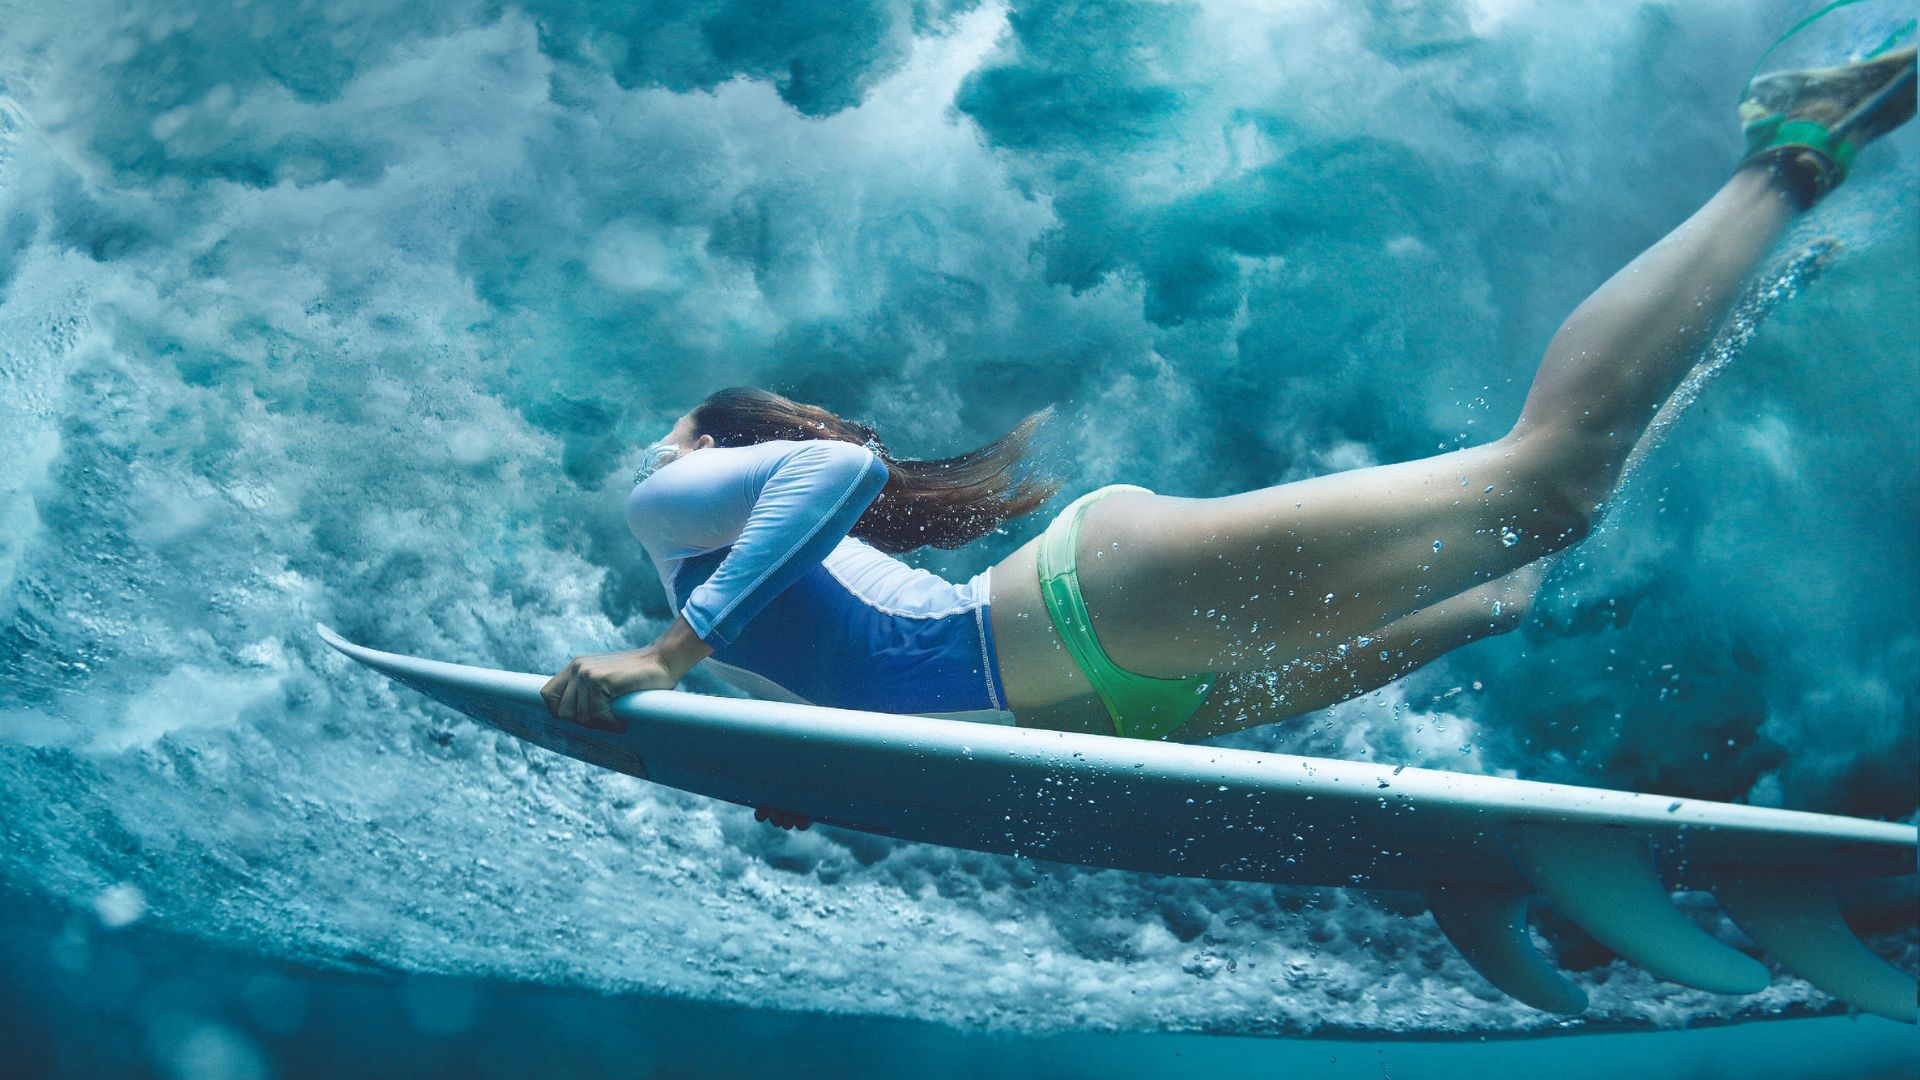 Philippines Surfing